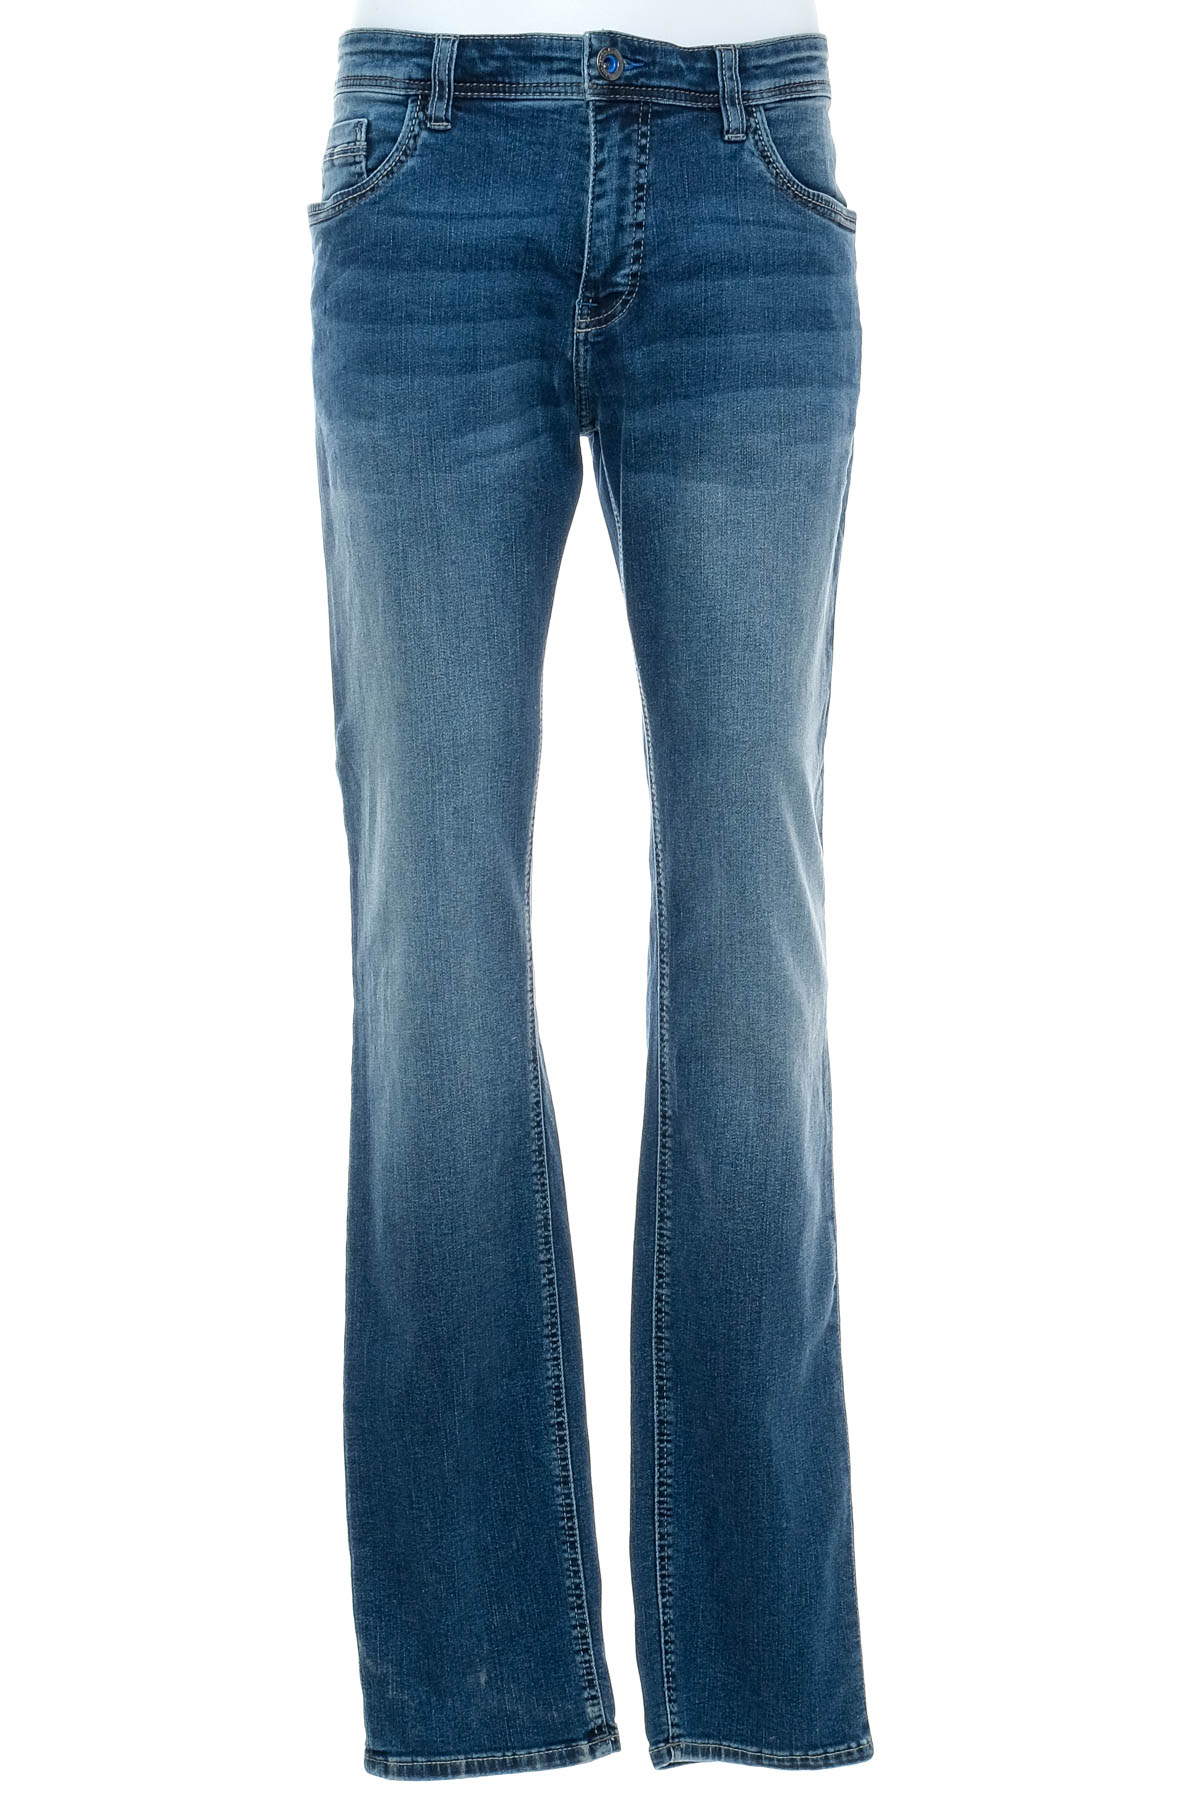 Men's jeans - Jean Carriere - 0